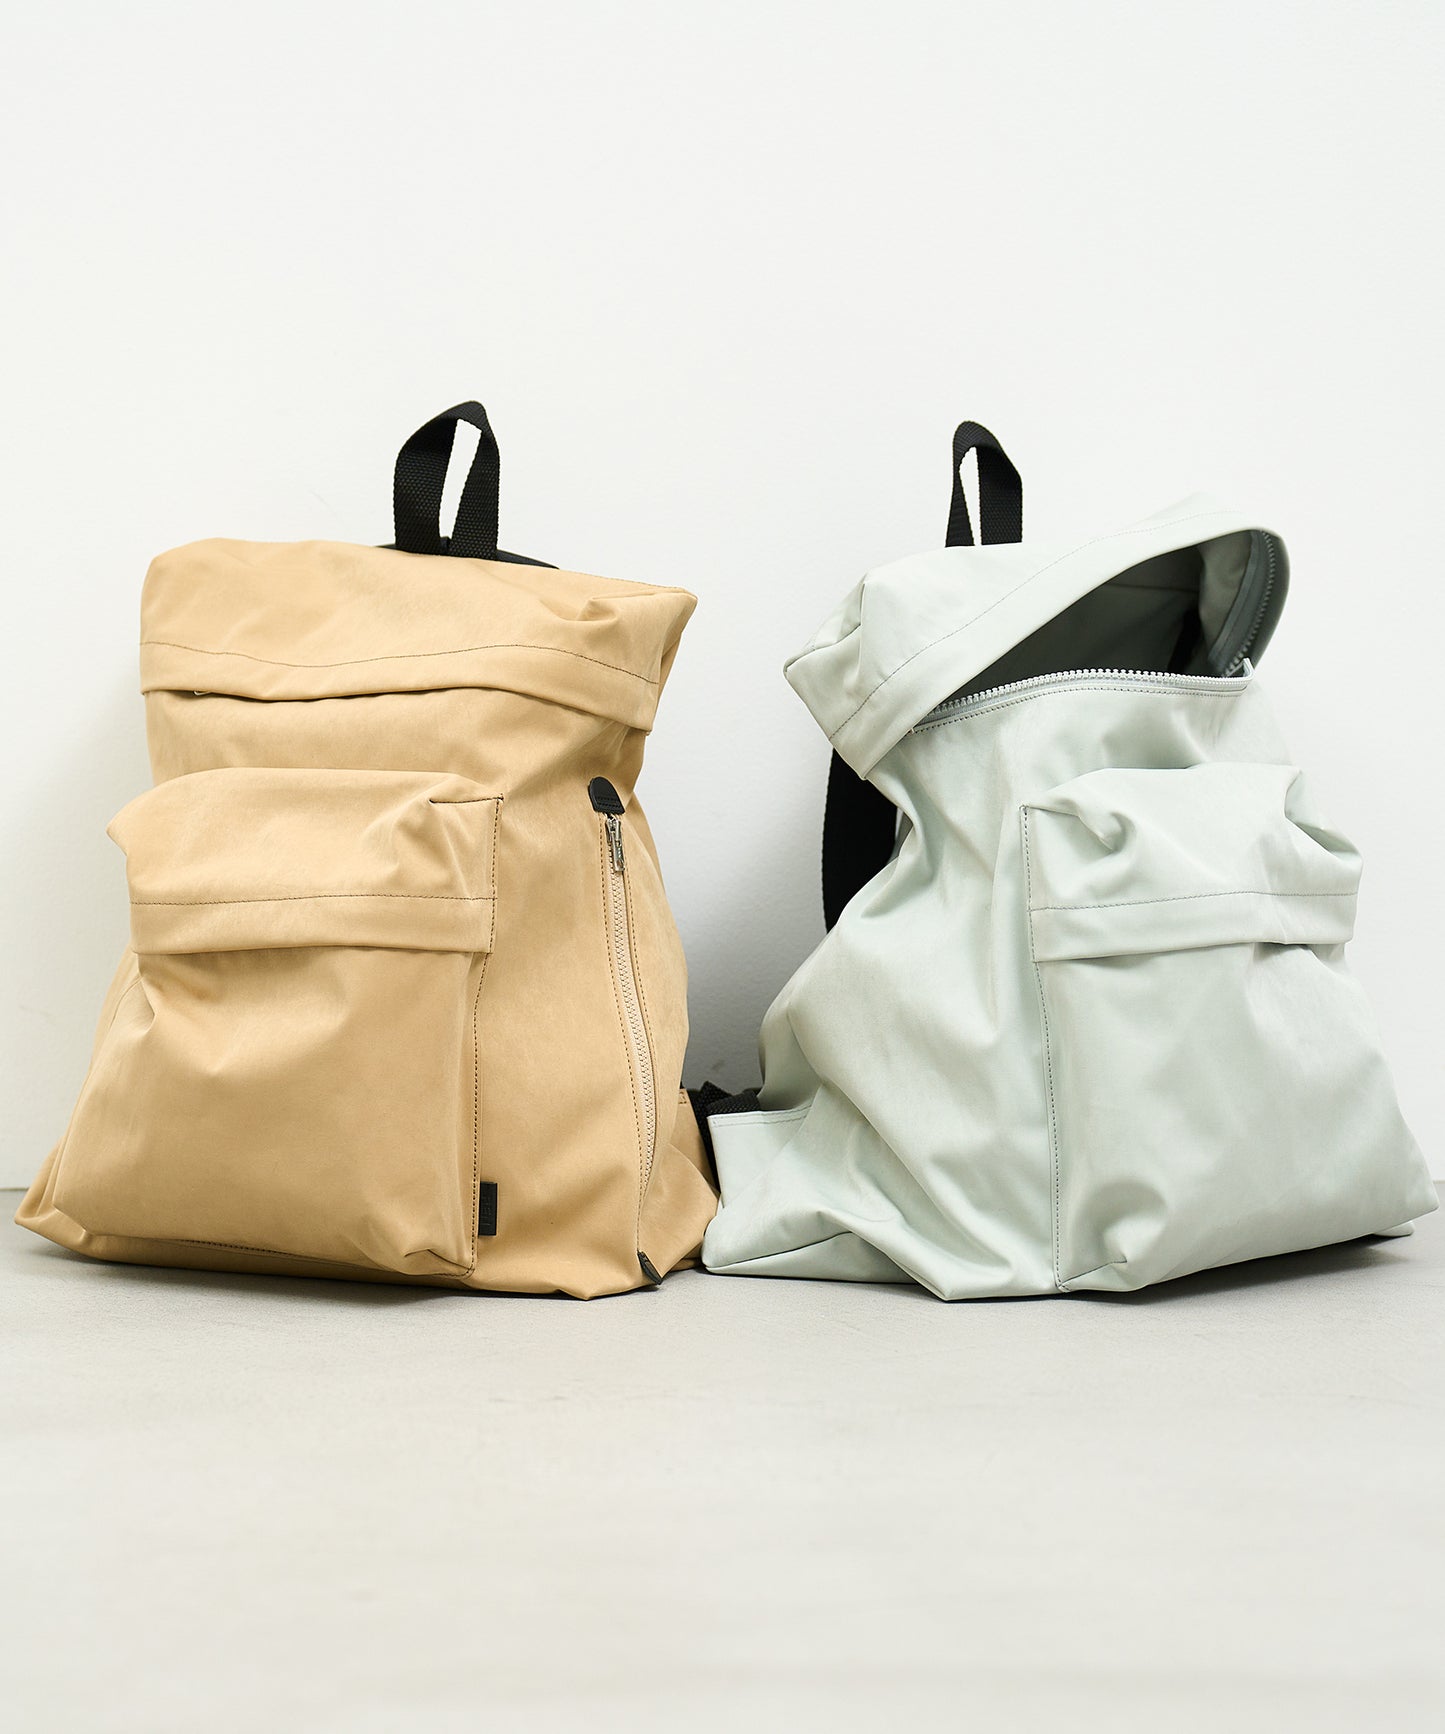 80's backpack / nylon "High density nylon"